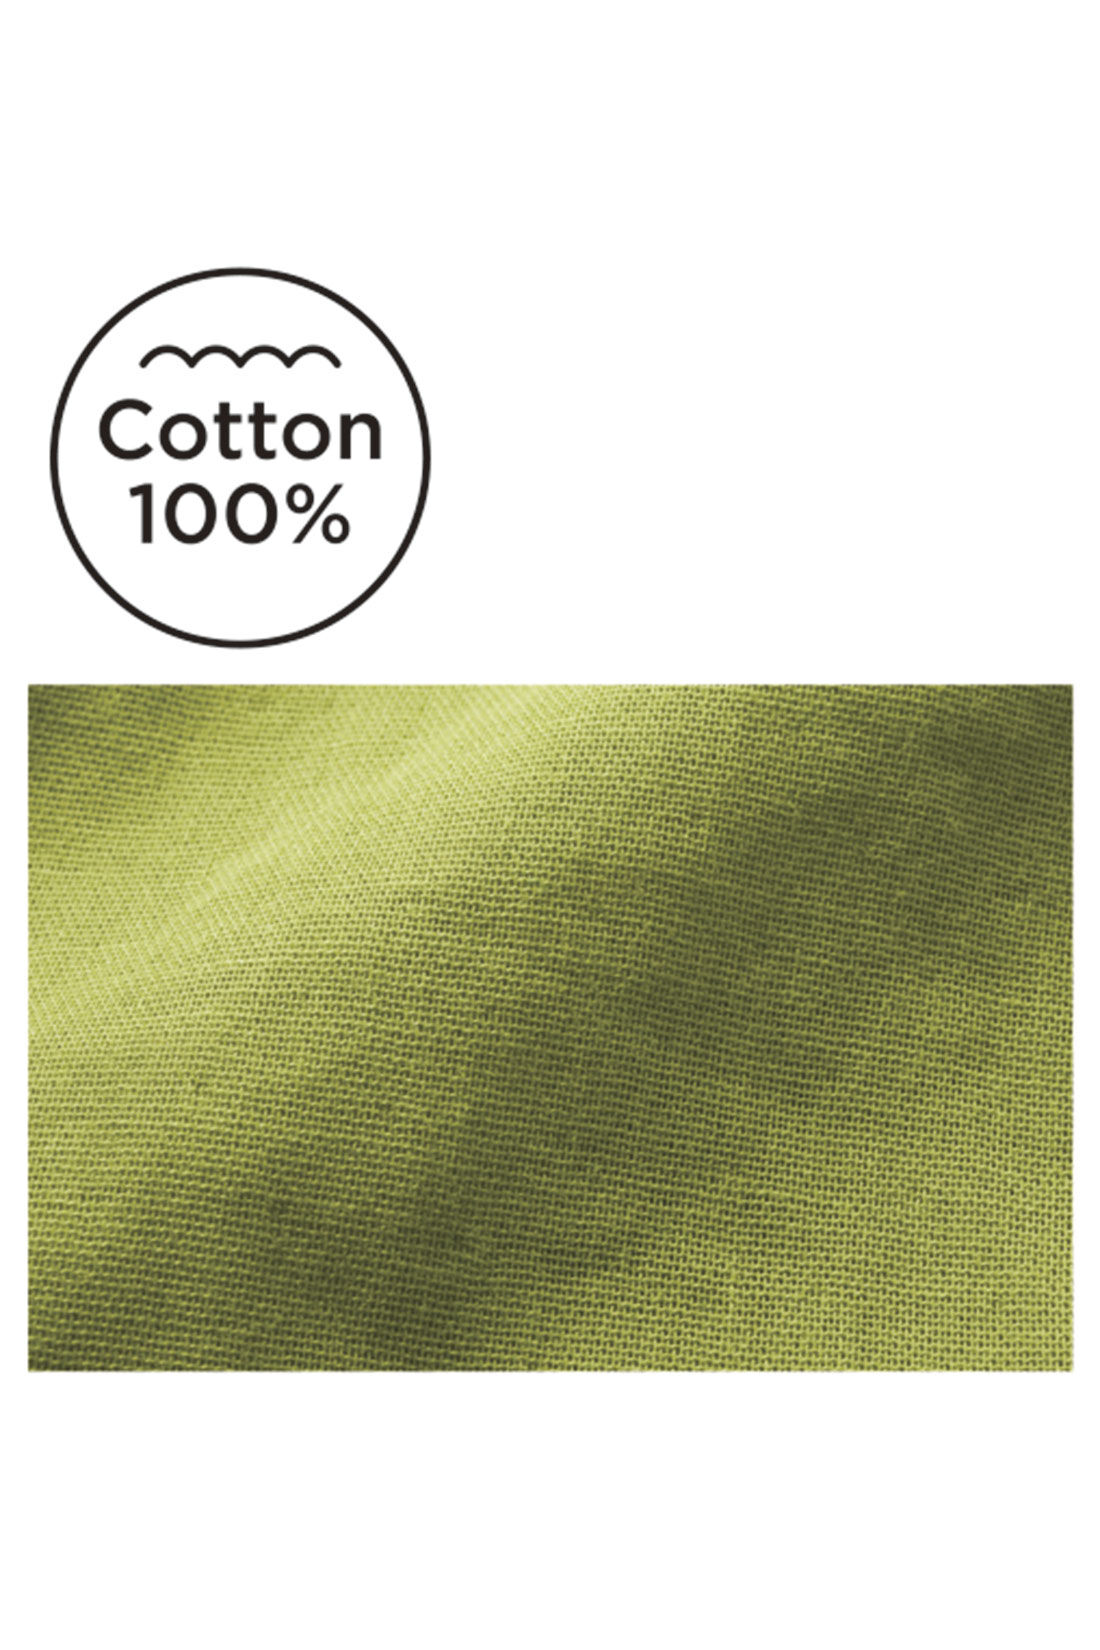 Live in  comfort|Live love cottonプロジェクト　リブ イン コンフォート　やわらかダブルガーゼにうっとり オーガニックコットンの上品フレンチブラウス〈ライムグリーン〉|洗うたびにくったり感が増す、やわらかなダブルガーゼ素材。